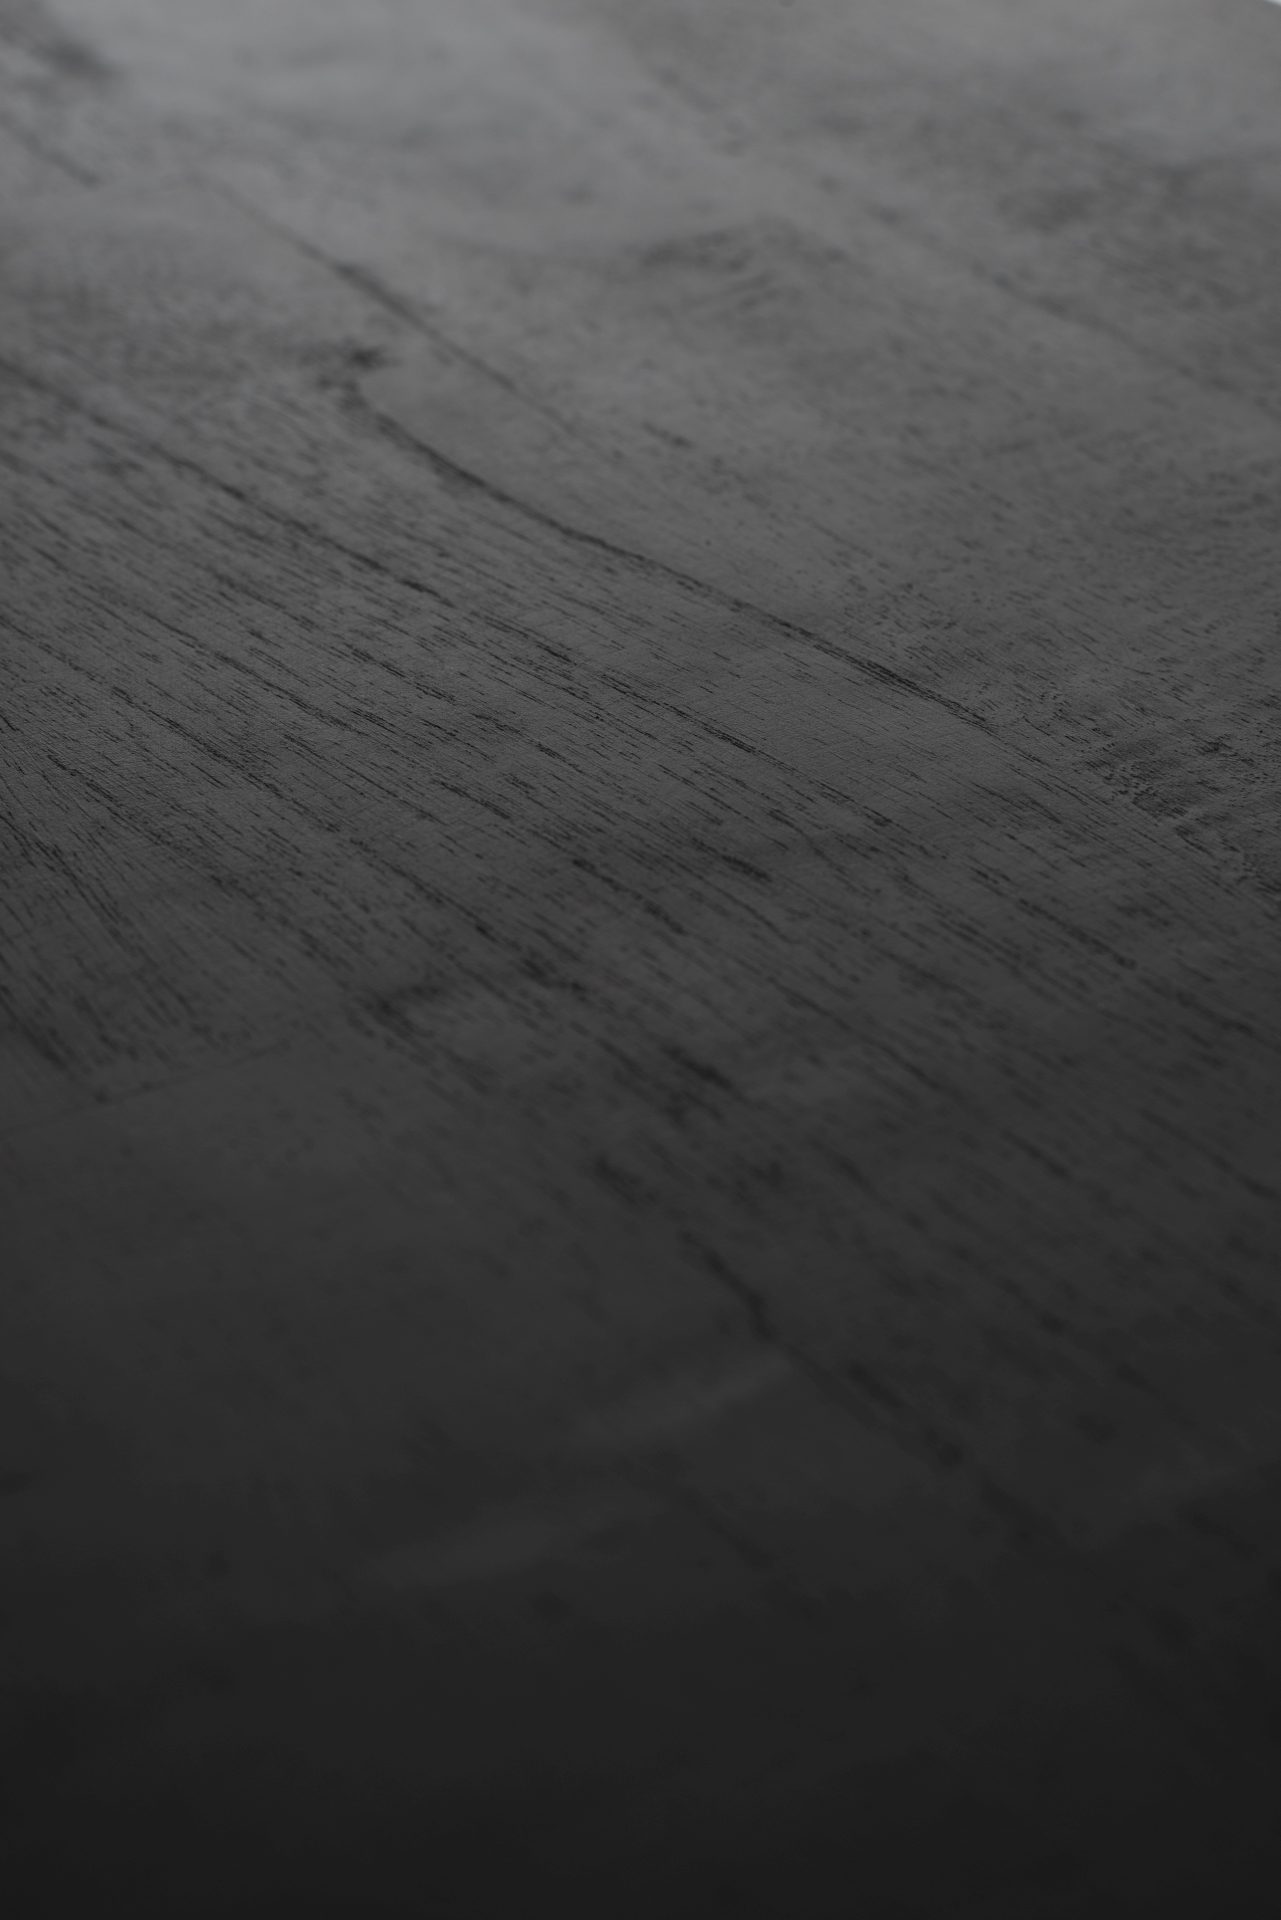 Das Sideboard Rustica überzeugt mit seinem Industriellen Design. Gefertigt wurde es aus einem Mix aus Recyceltem Boots Holz und Mindi Holz, welches einen schwarzen und natürlichen Farbton besitzt. Das Gestell ist aus Metall und hat eine schwarze Farbe. Da